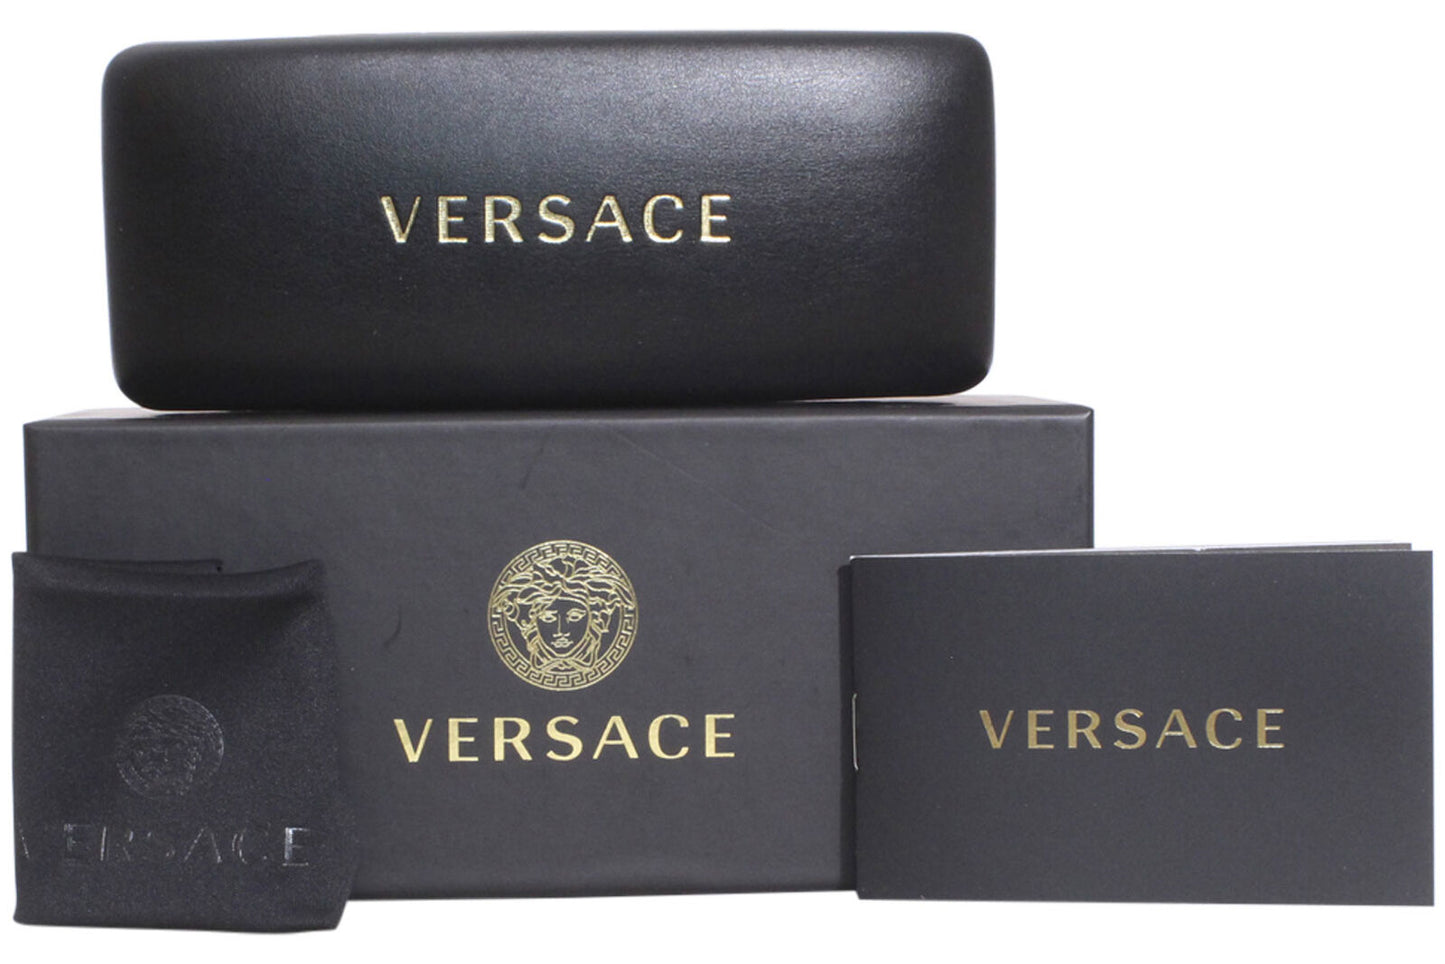 Versace 0VE3328-GB1 54mm New Eyeglasses